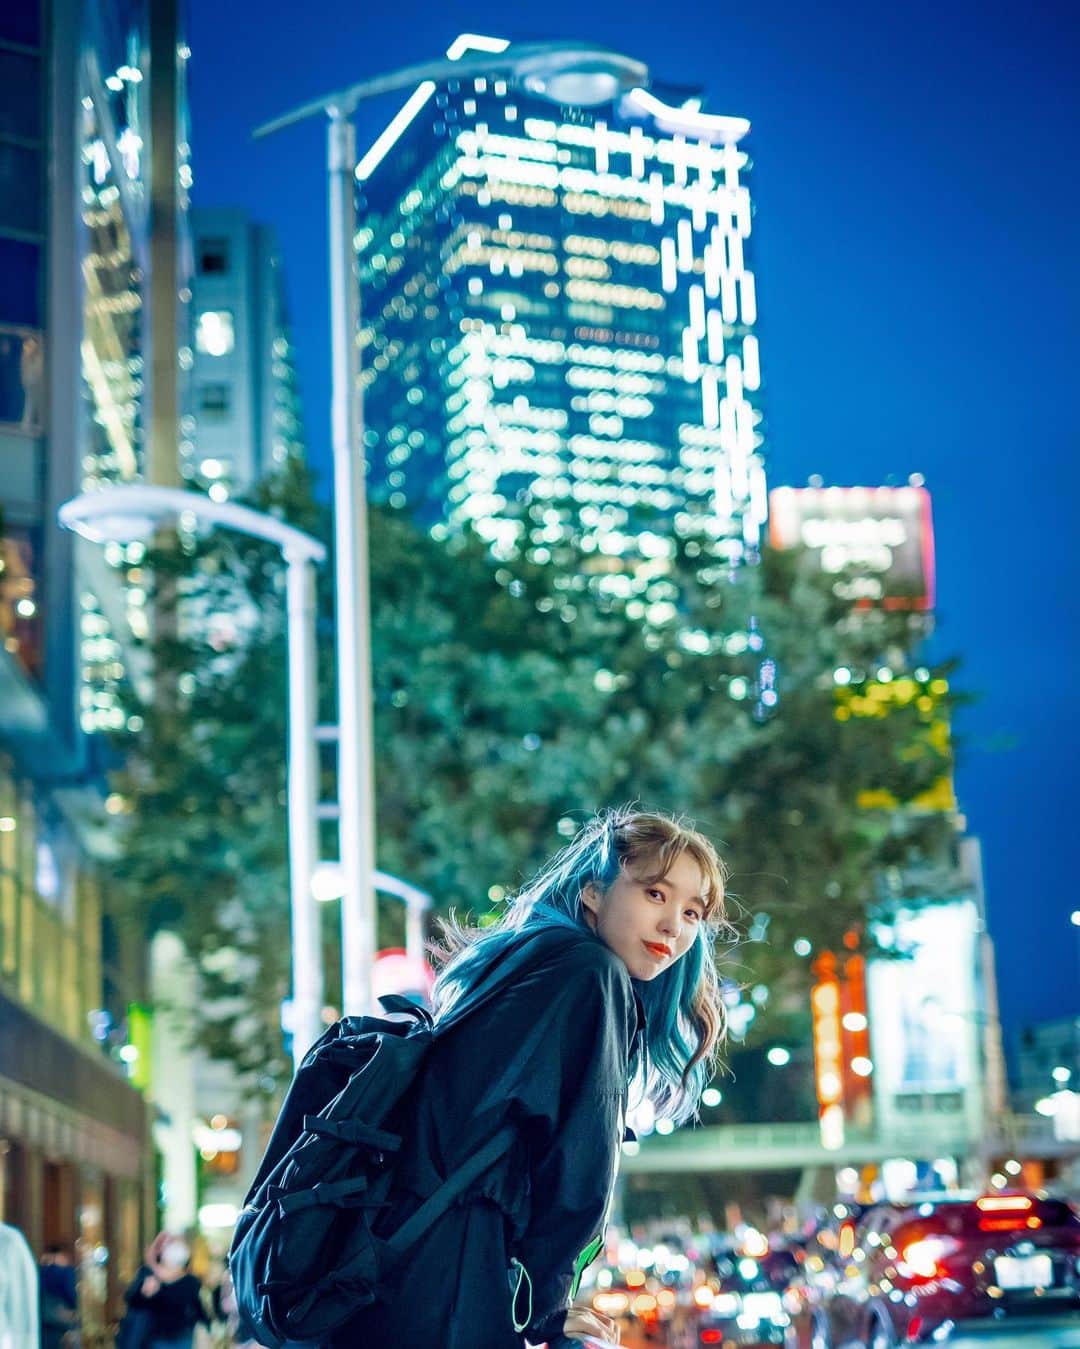 奥野香耶のインスタグラム：「💎 髪染めた次の日だったから 色すごく綺麗だったな✨ photo:高橋みのりさん (@tkhsmnr108 ) #東京 #渋谷 #ファインダー越しの私の世界#カメラ #photography #tokyo #shibuya #japanese #girl #blue #インナーブルー #夜景撮影 #夜 #ストリート系女子 #fashion #potrait #city #cityphotography」